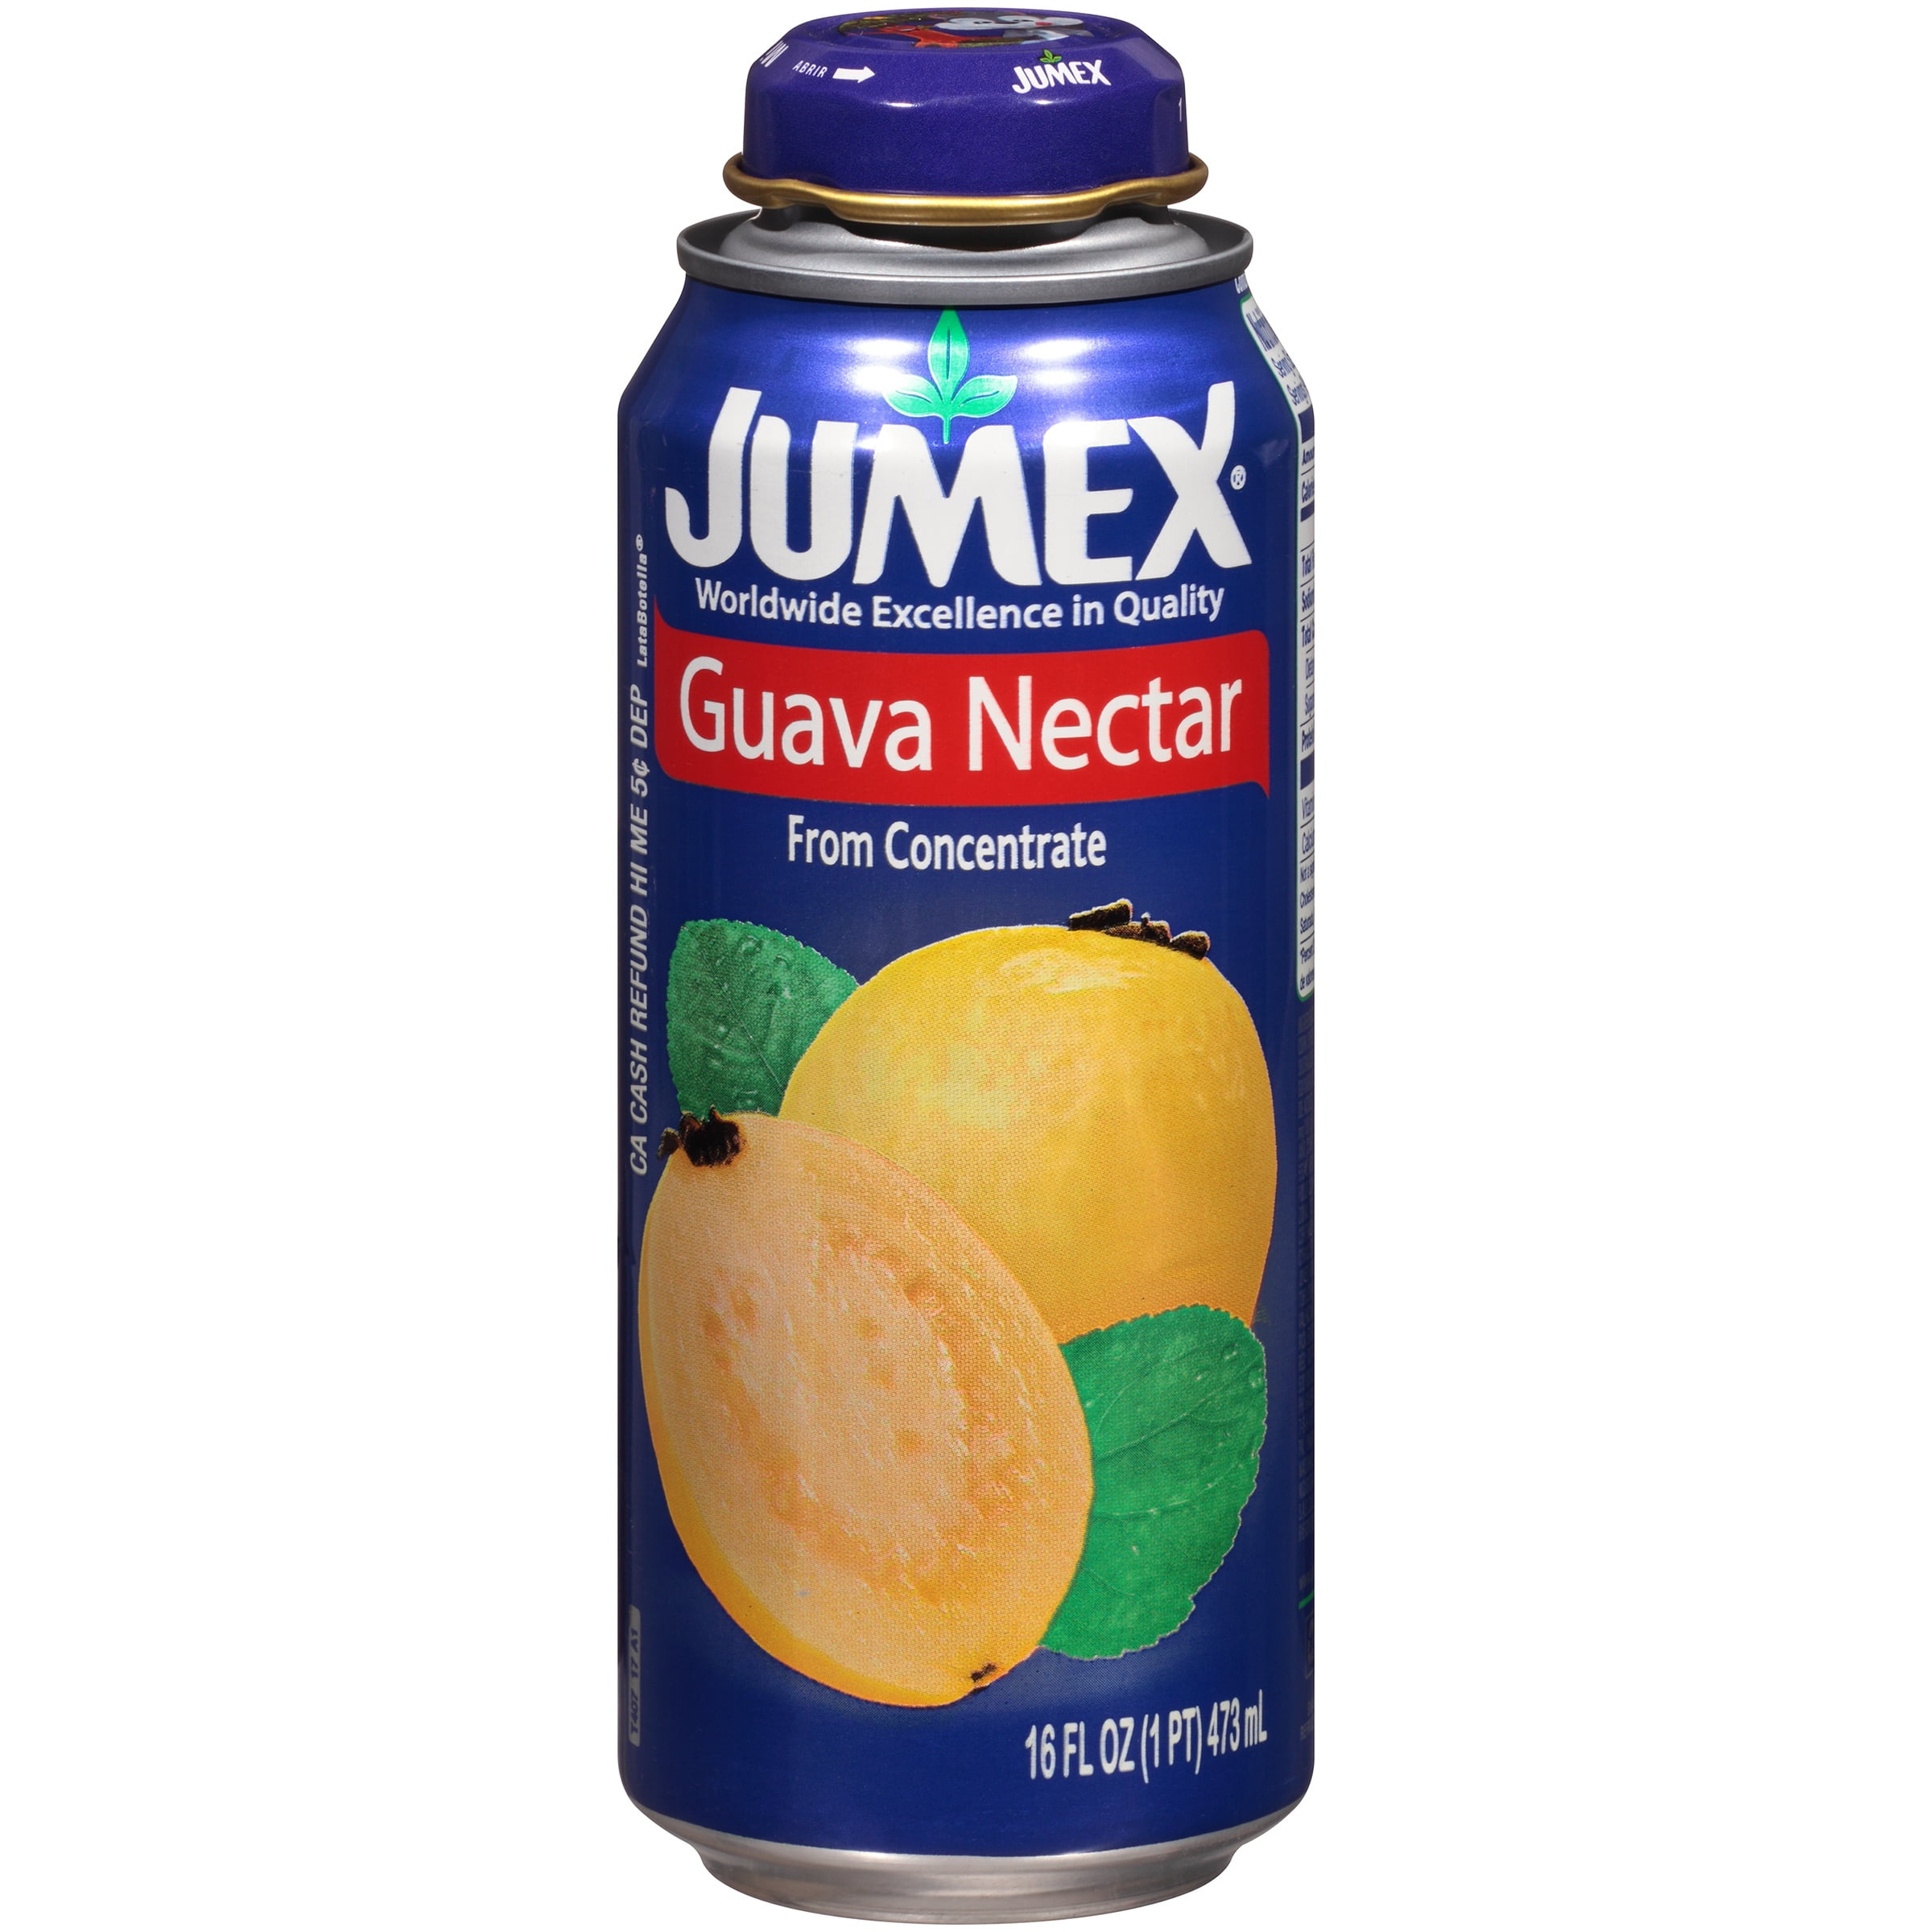 Со нектар. Jumex кокосово-ананасовый нектар 473мл. Нектар Jumex манго 473мл. Jumex Guava. Сок Jumex, Mango, 1 л.